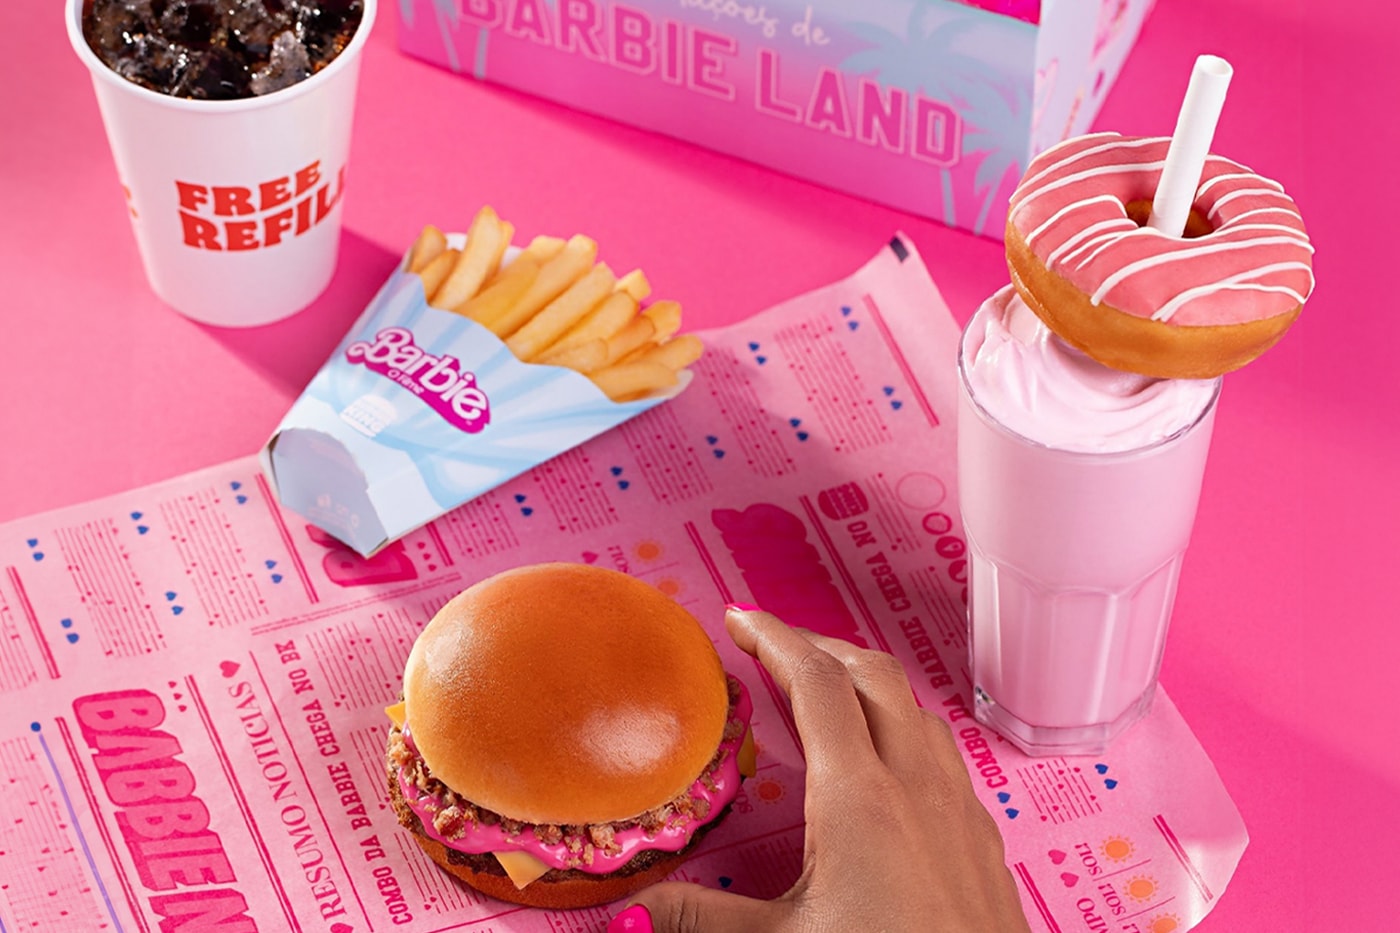 Burger King Brazil Barbie Burger announcement info